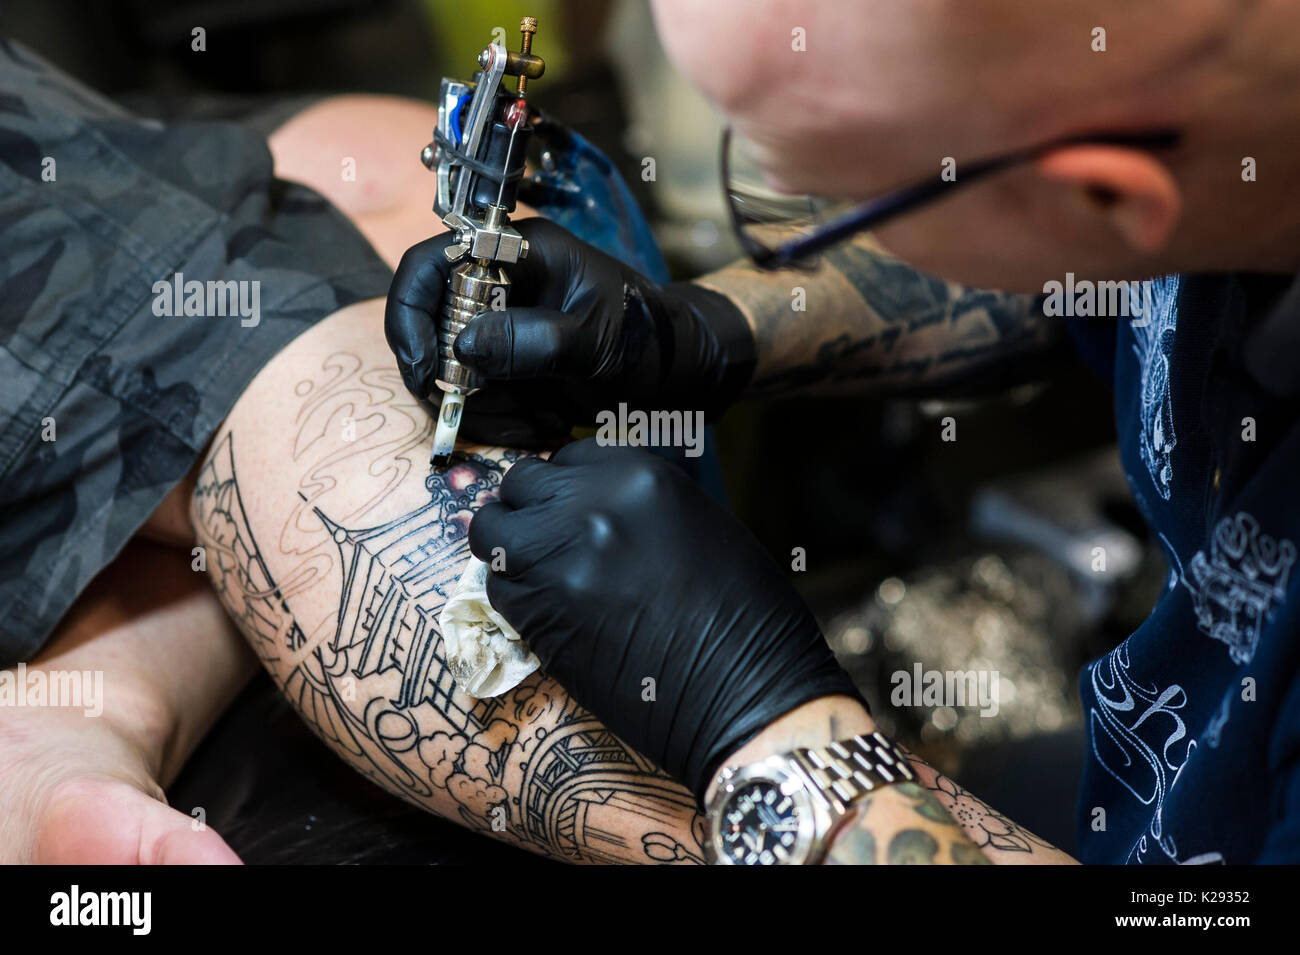 Le Tatouage - Une vue rapprochée de la conception d'être tatoué sur la jambe d'un client à la Convention de tatouage de Cornwall. Banque D'Images